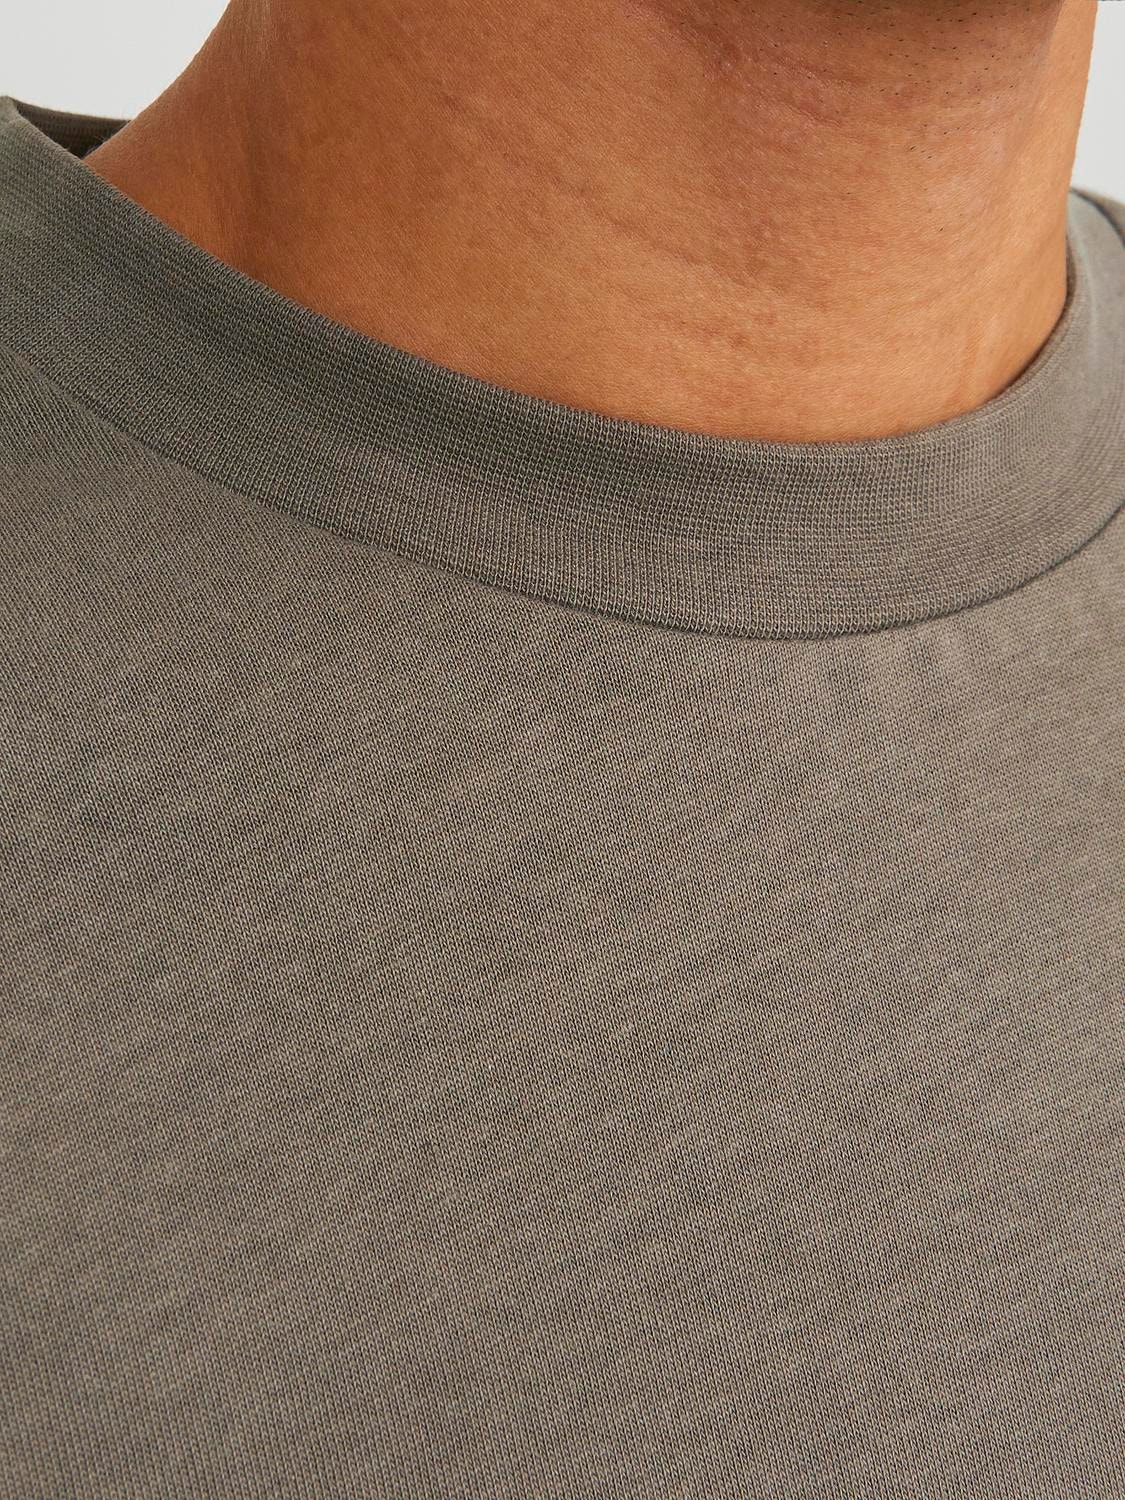 Jack & Jones Printed Crew neck Sweatshirt -Bungee Cord - 12249979